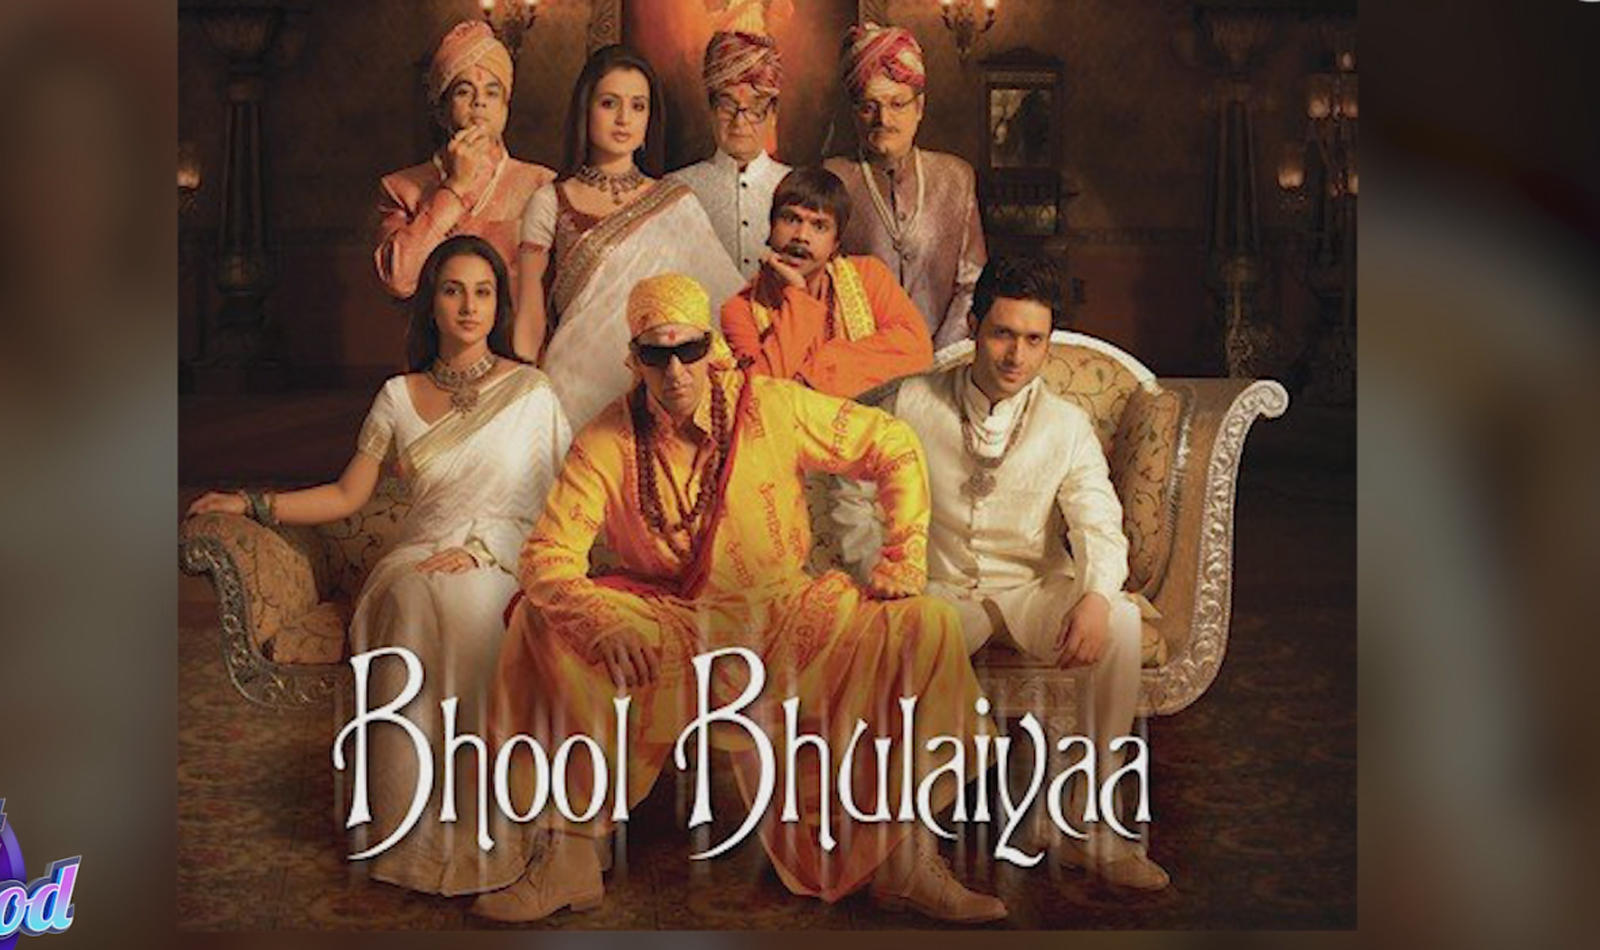 Bhool bhulaiyaa full movie torrent